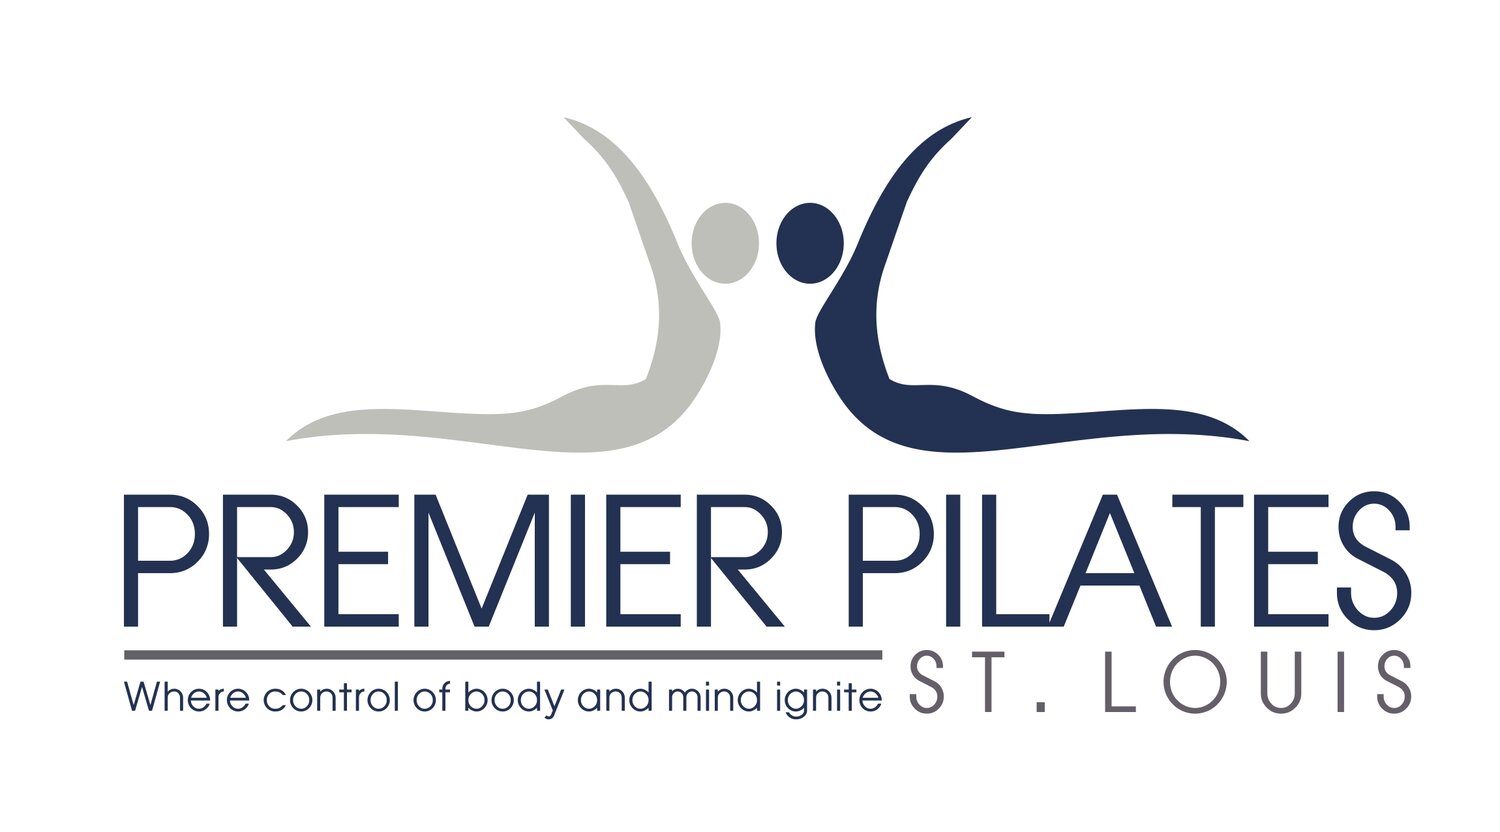 Premier Pilates St. Louis